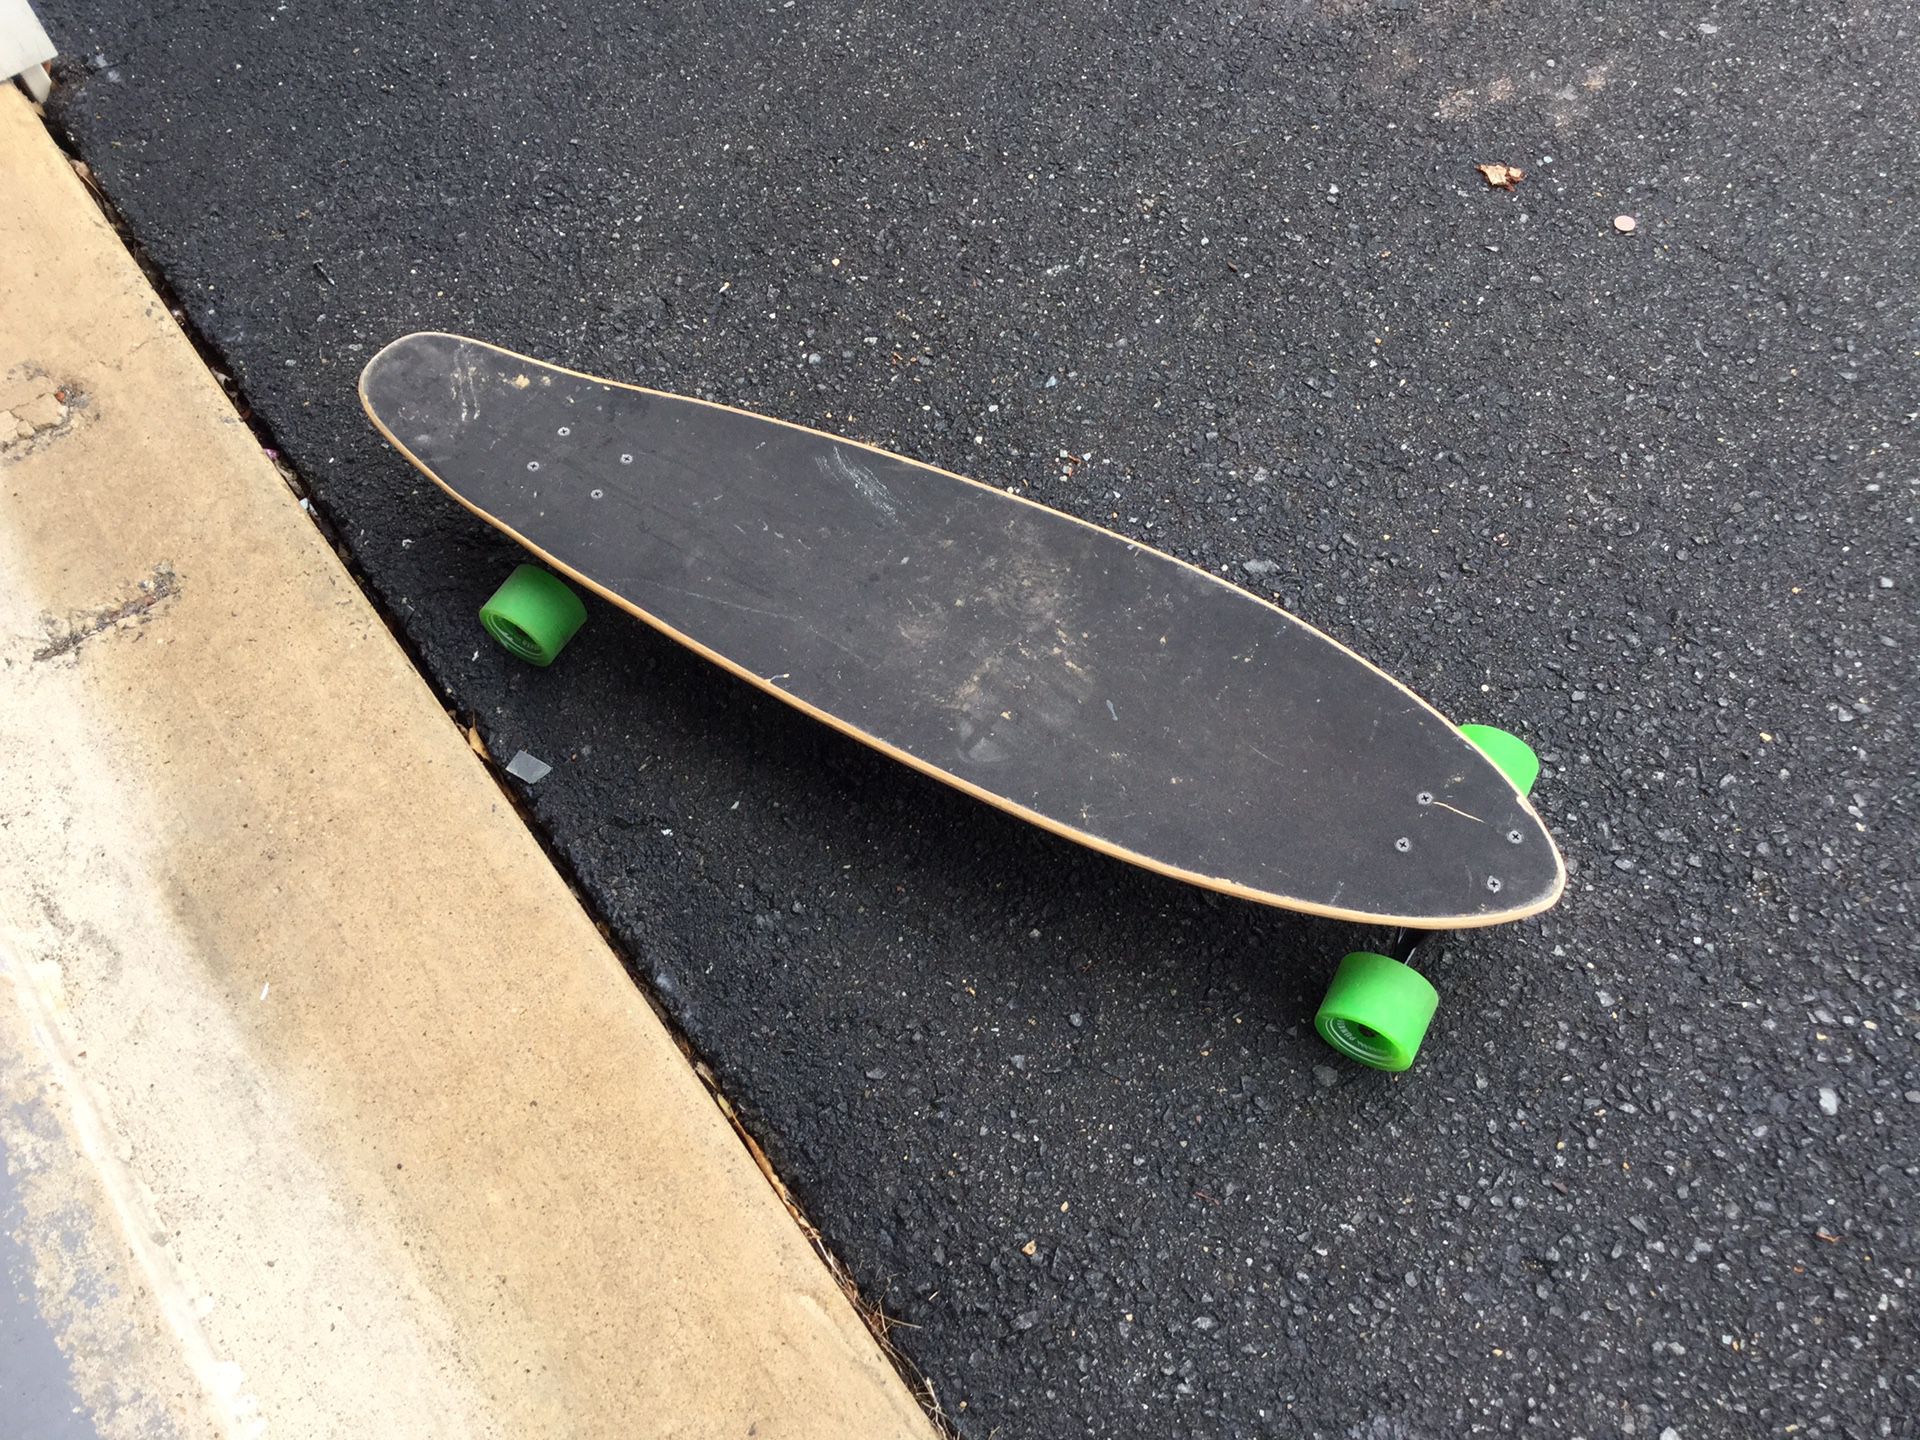 Skate board